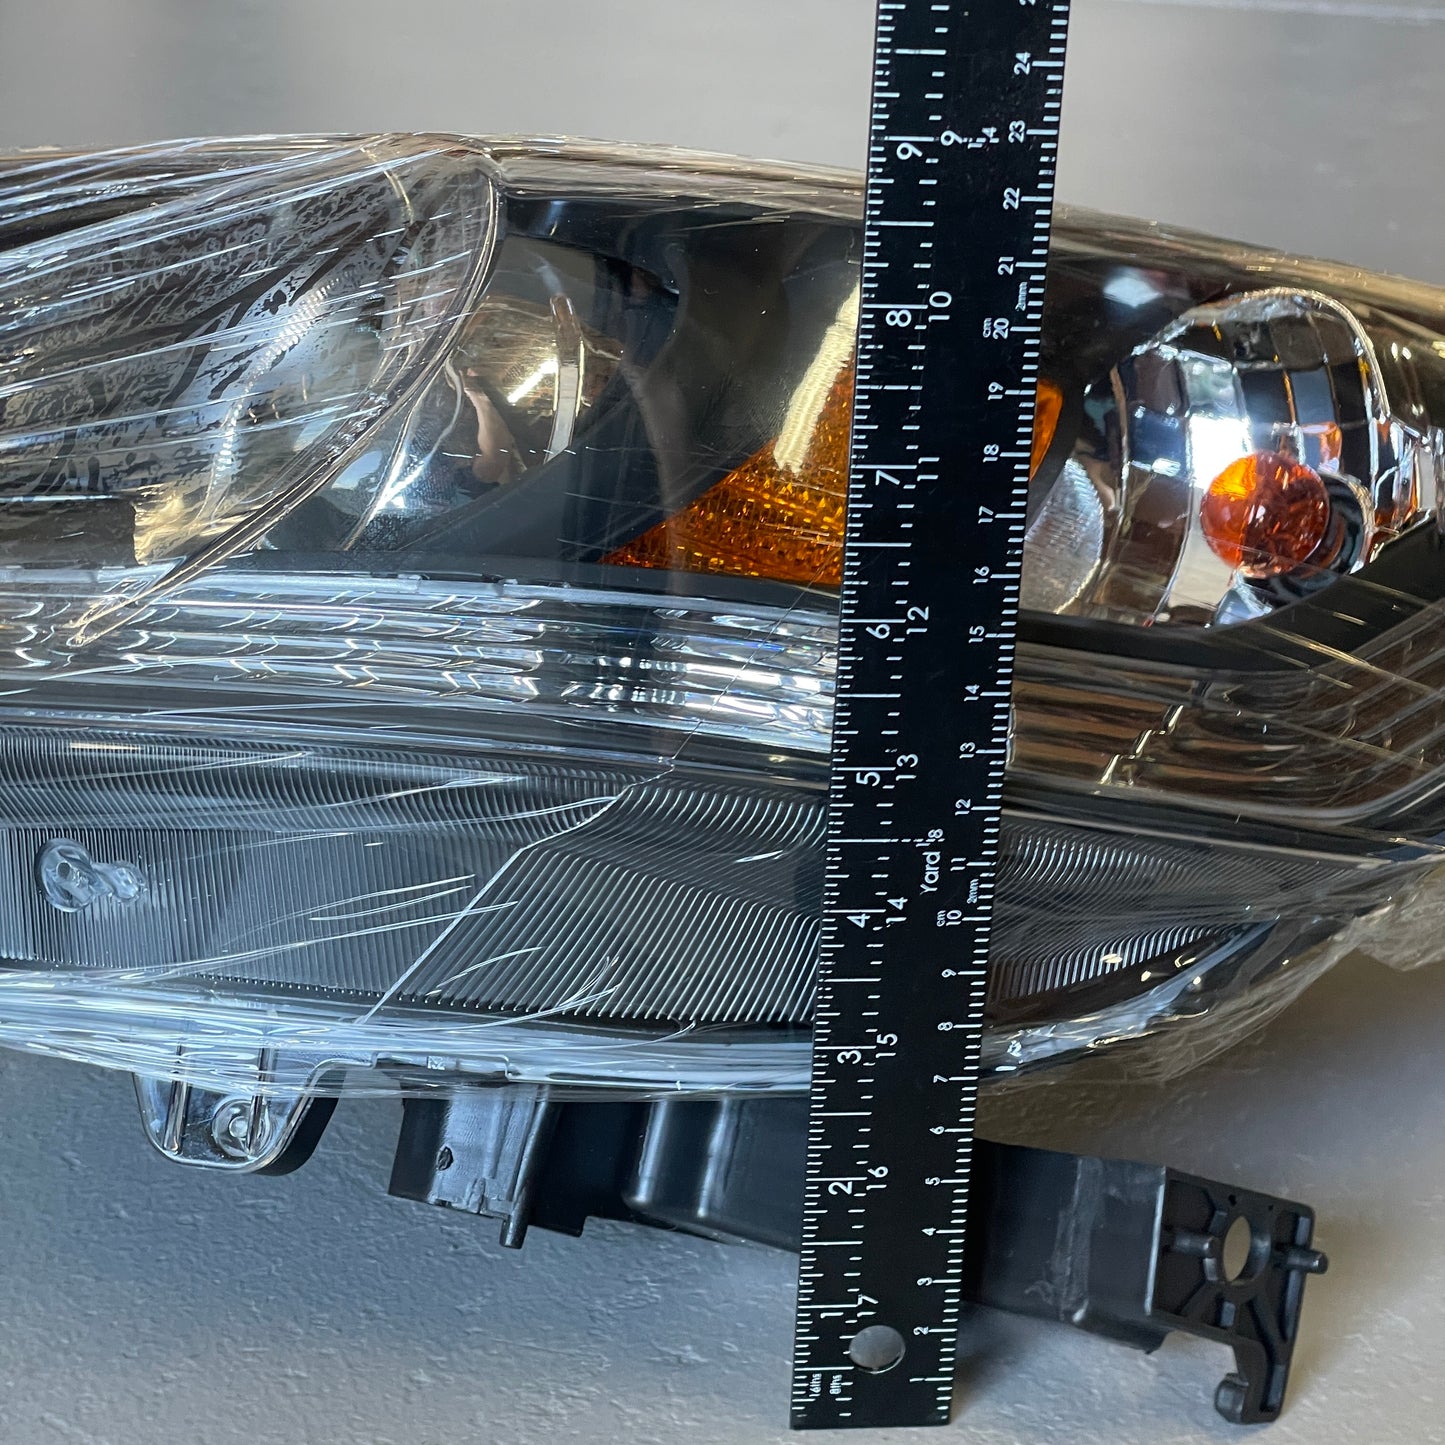 KEYSTONE Driver Side Halogen Headlight fits Honda Accord 13-15 HO2502151C (New)